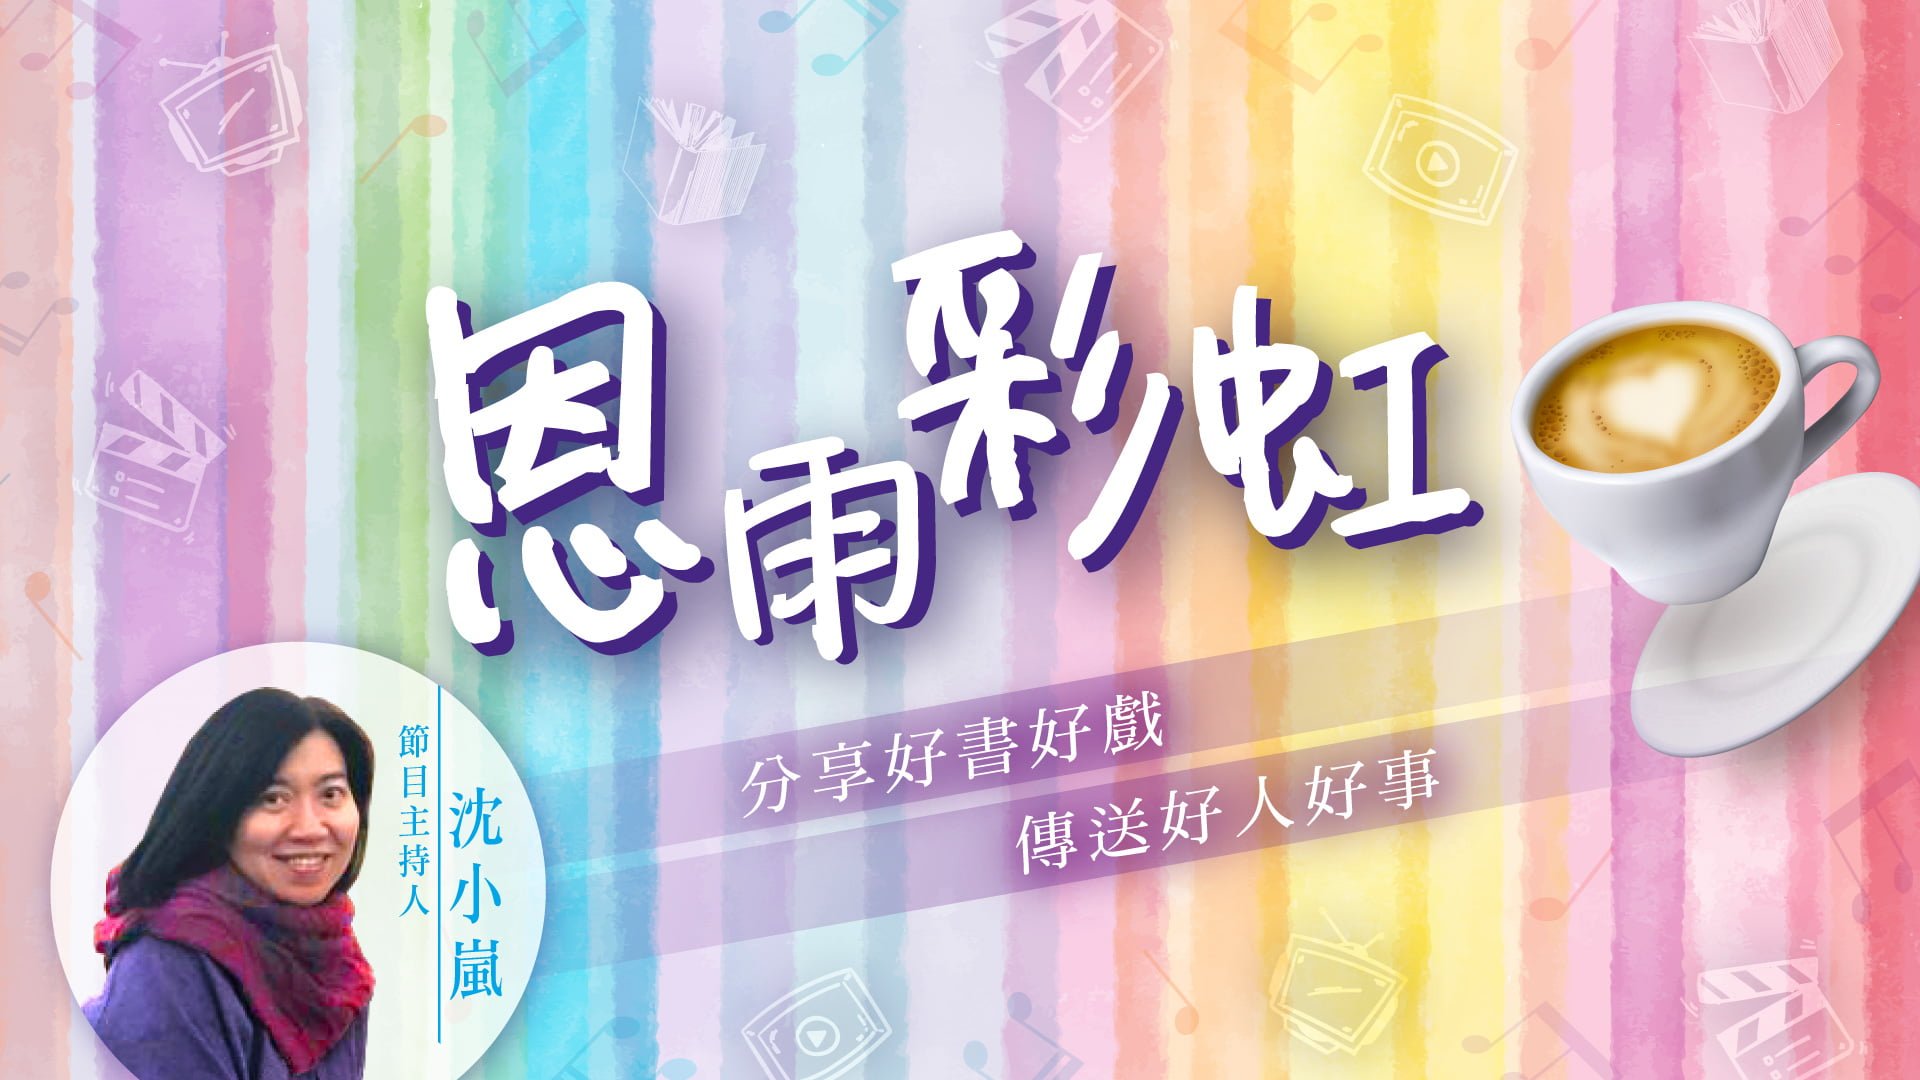 电台 恩雨彩虹 (2021SEP05)